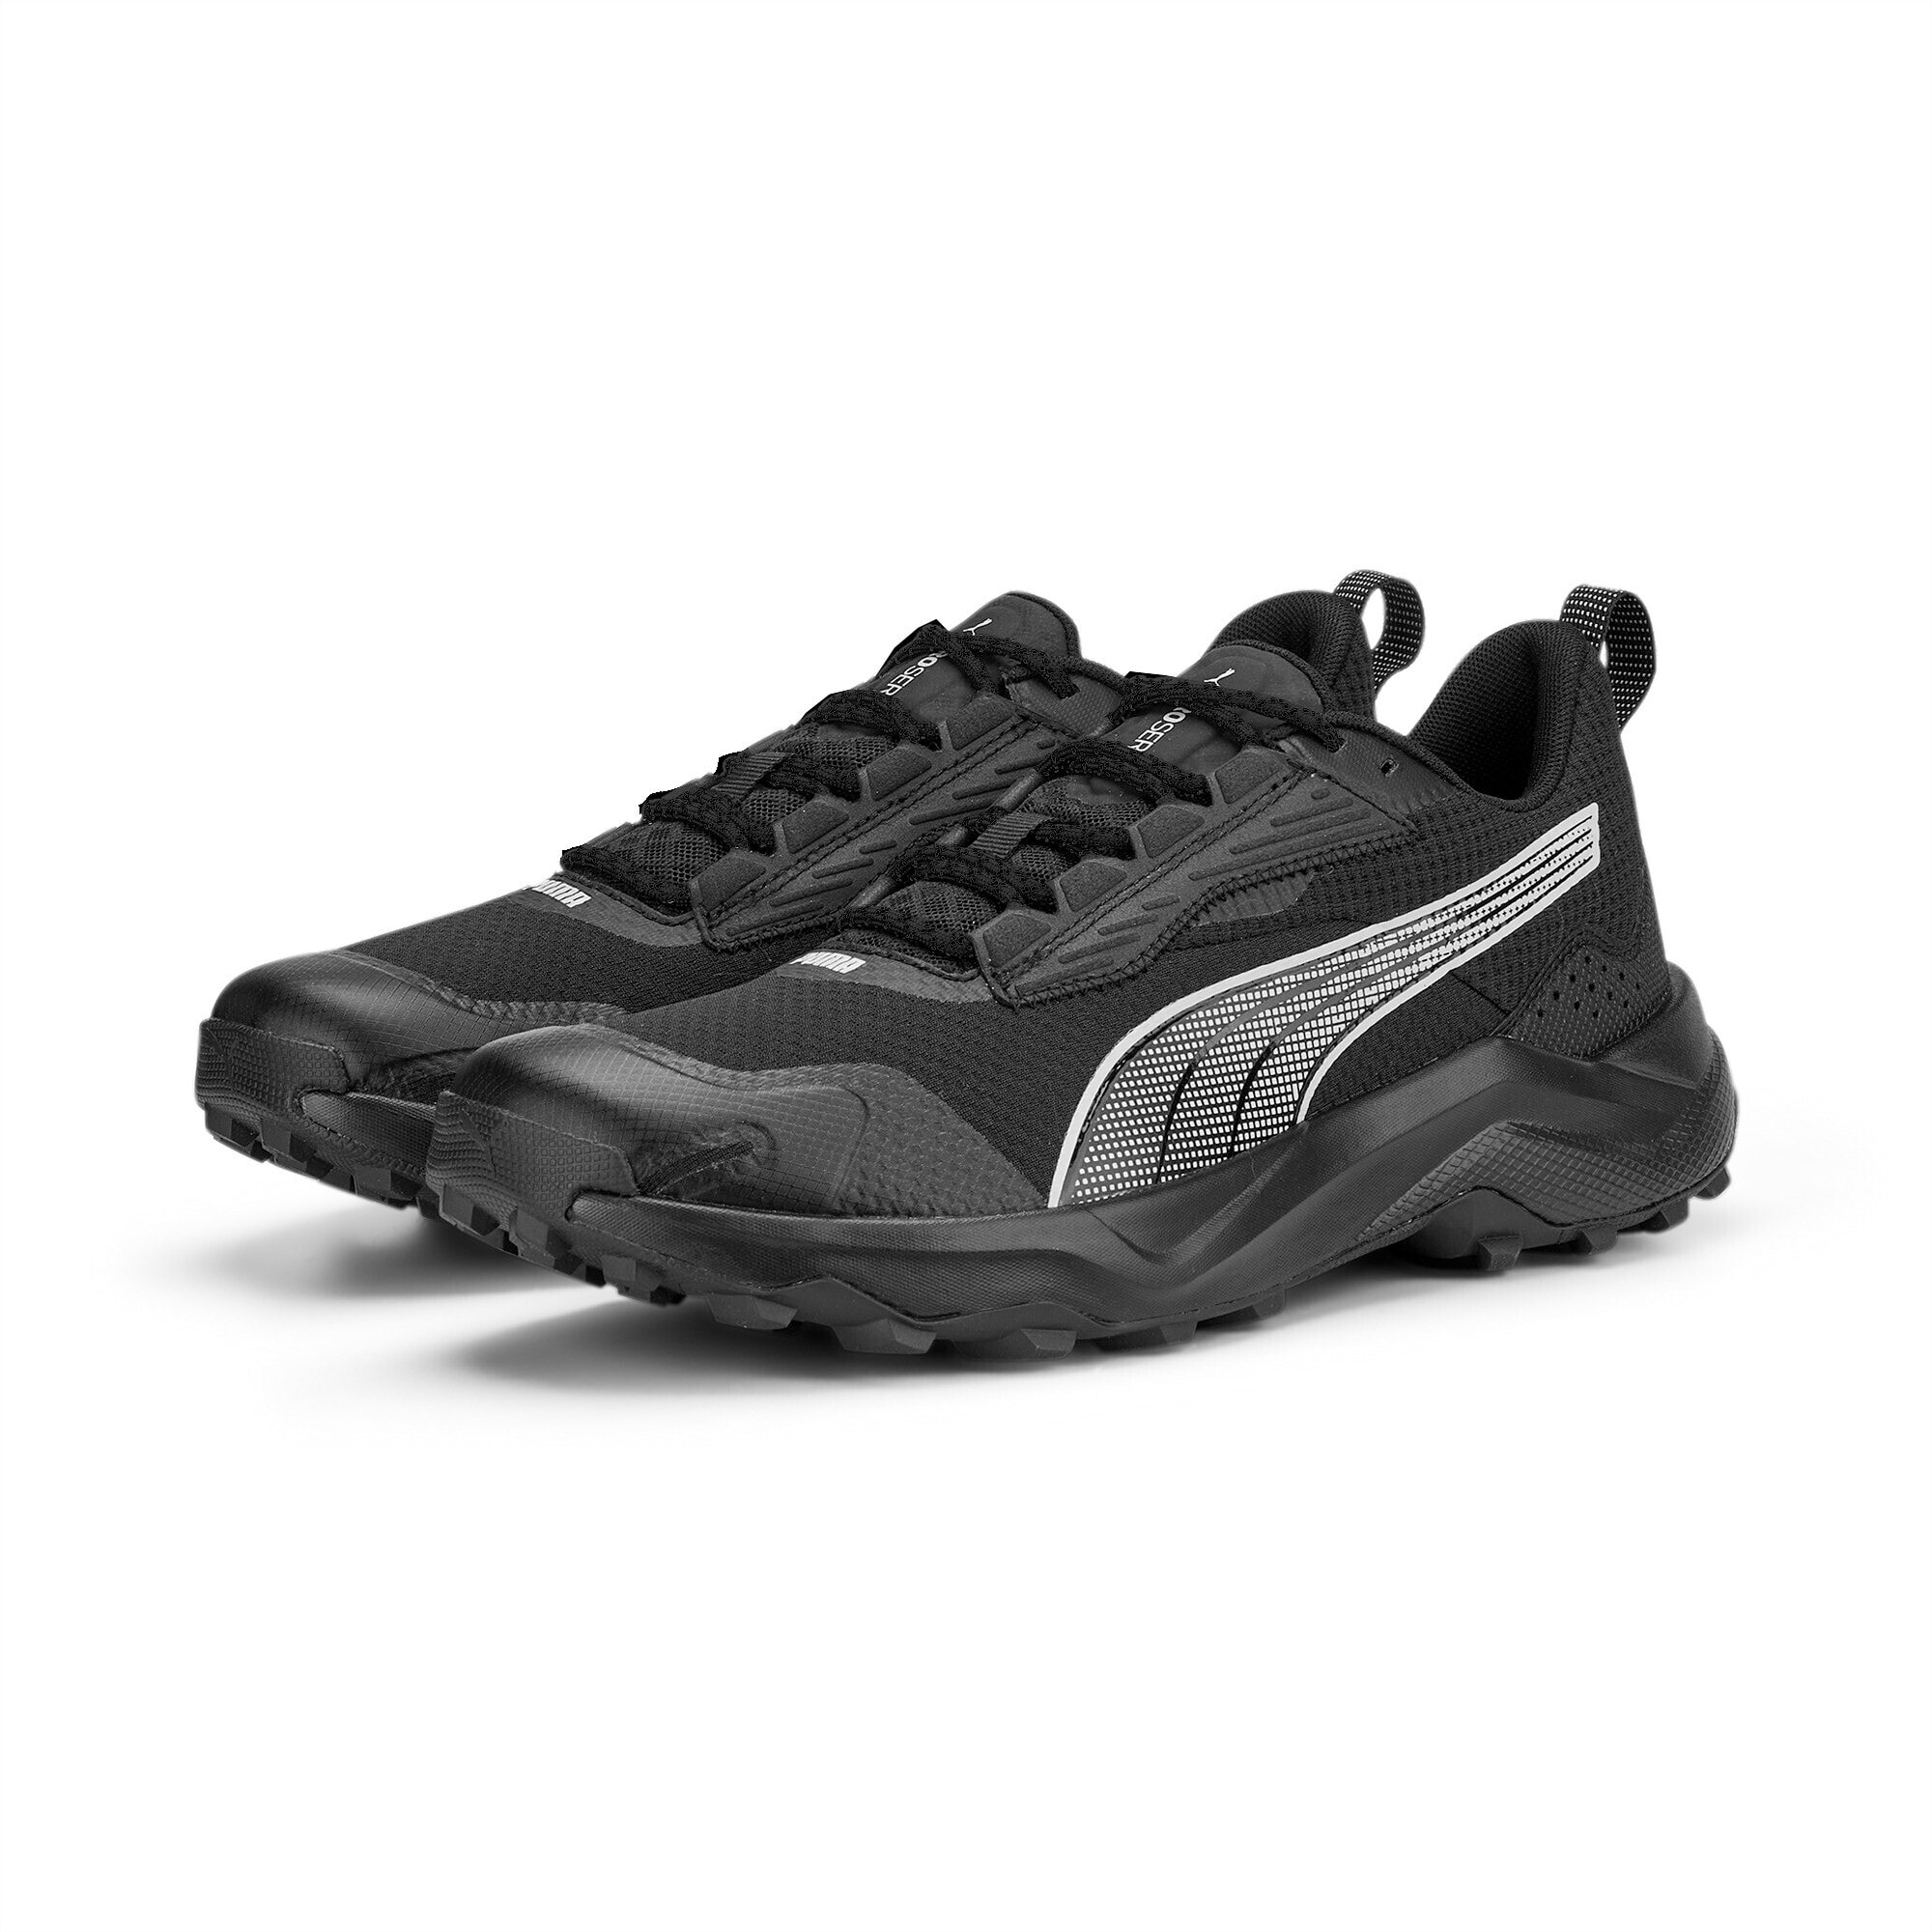 PUMA Chaussures De Running Obstruct Profoam, Noir/Gris